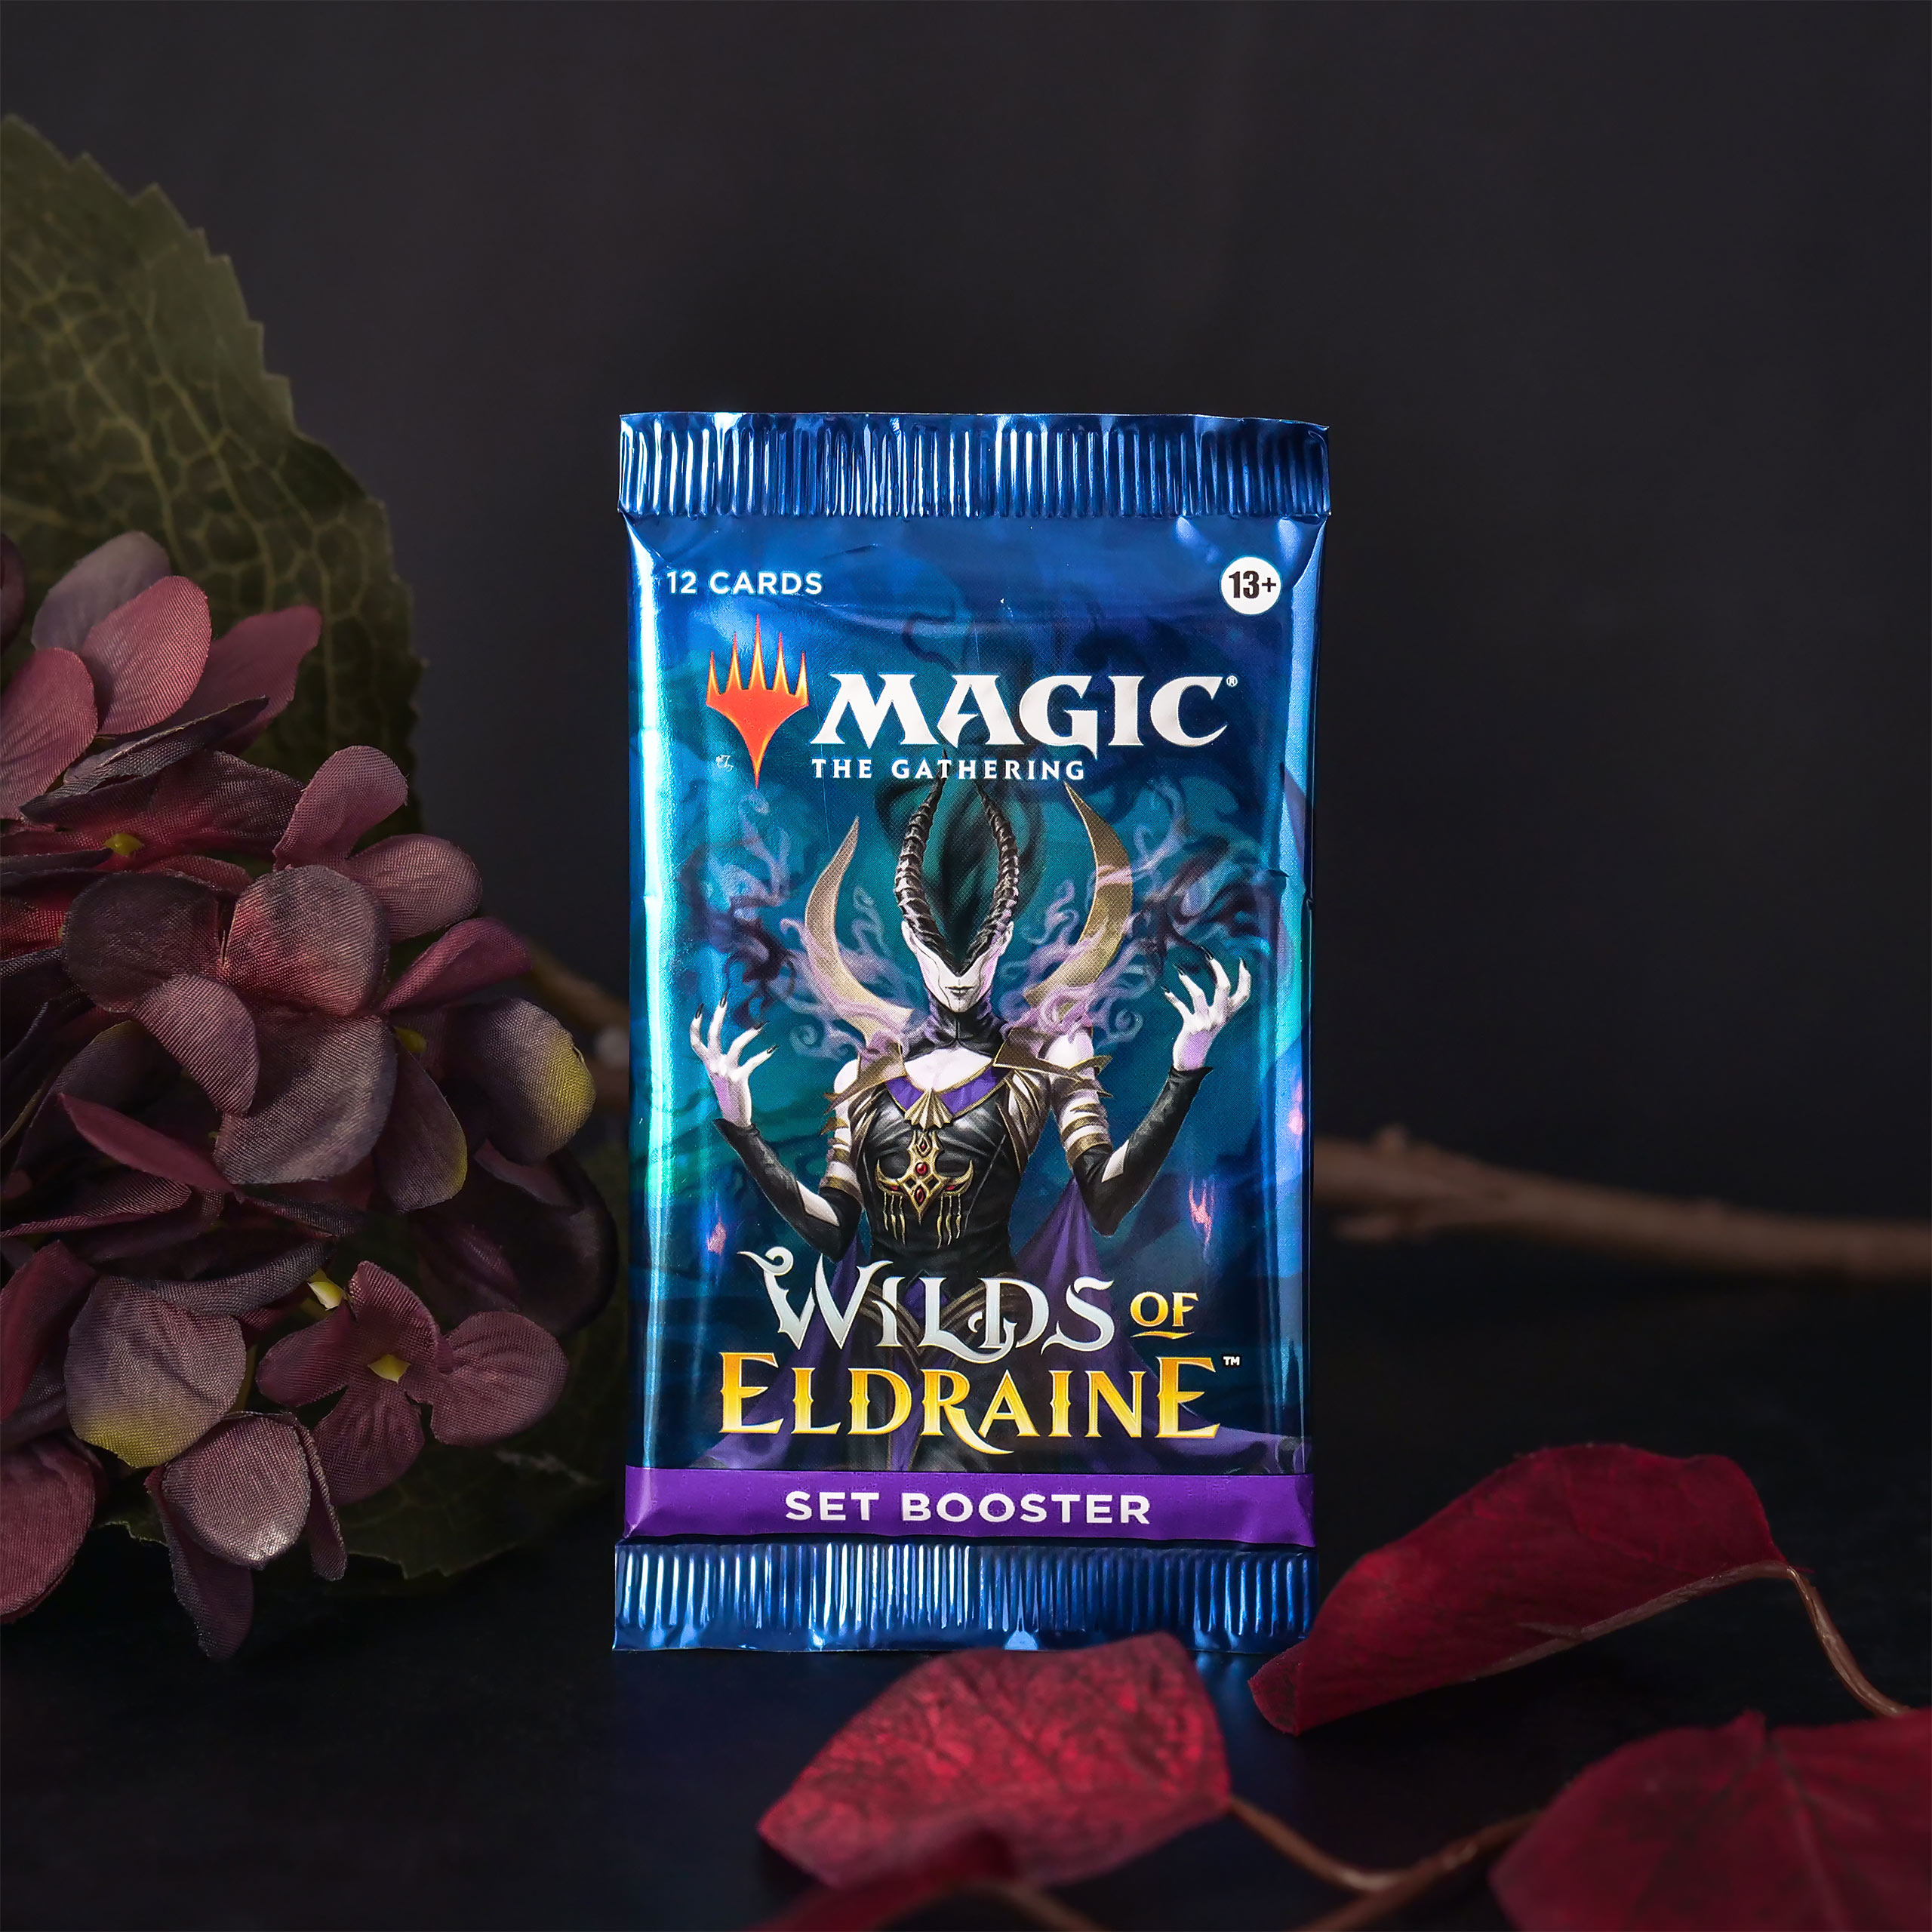 Wilds of Eldraine Set Booster englische Version - Magic The Gathering